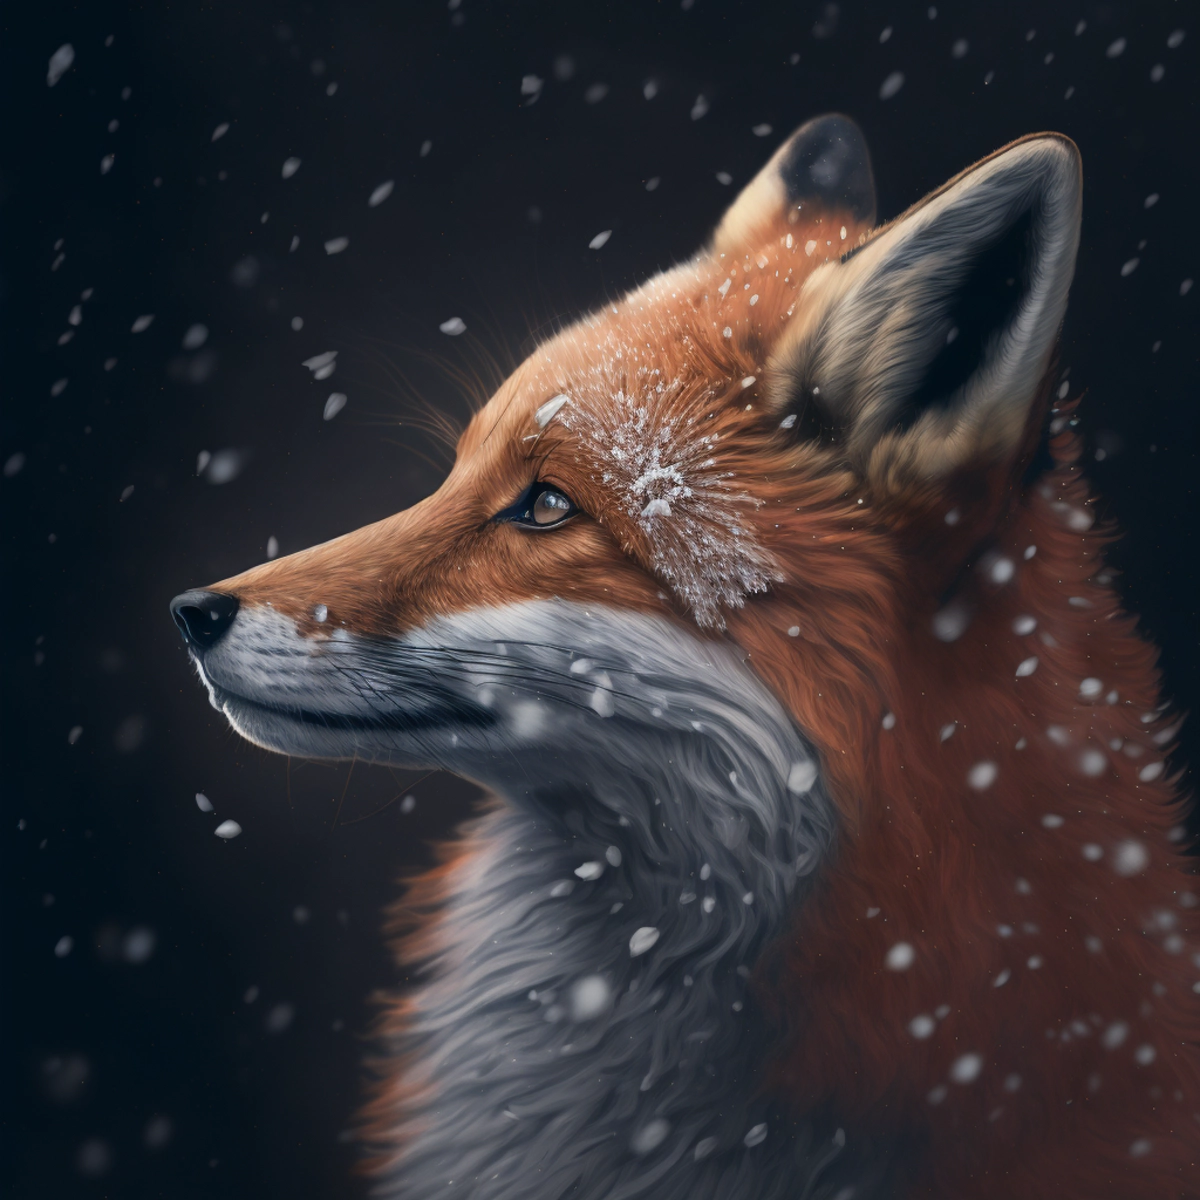 Un retrato de primer plano de un zorro curioso, con copos de nieve descansando sobre su piel